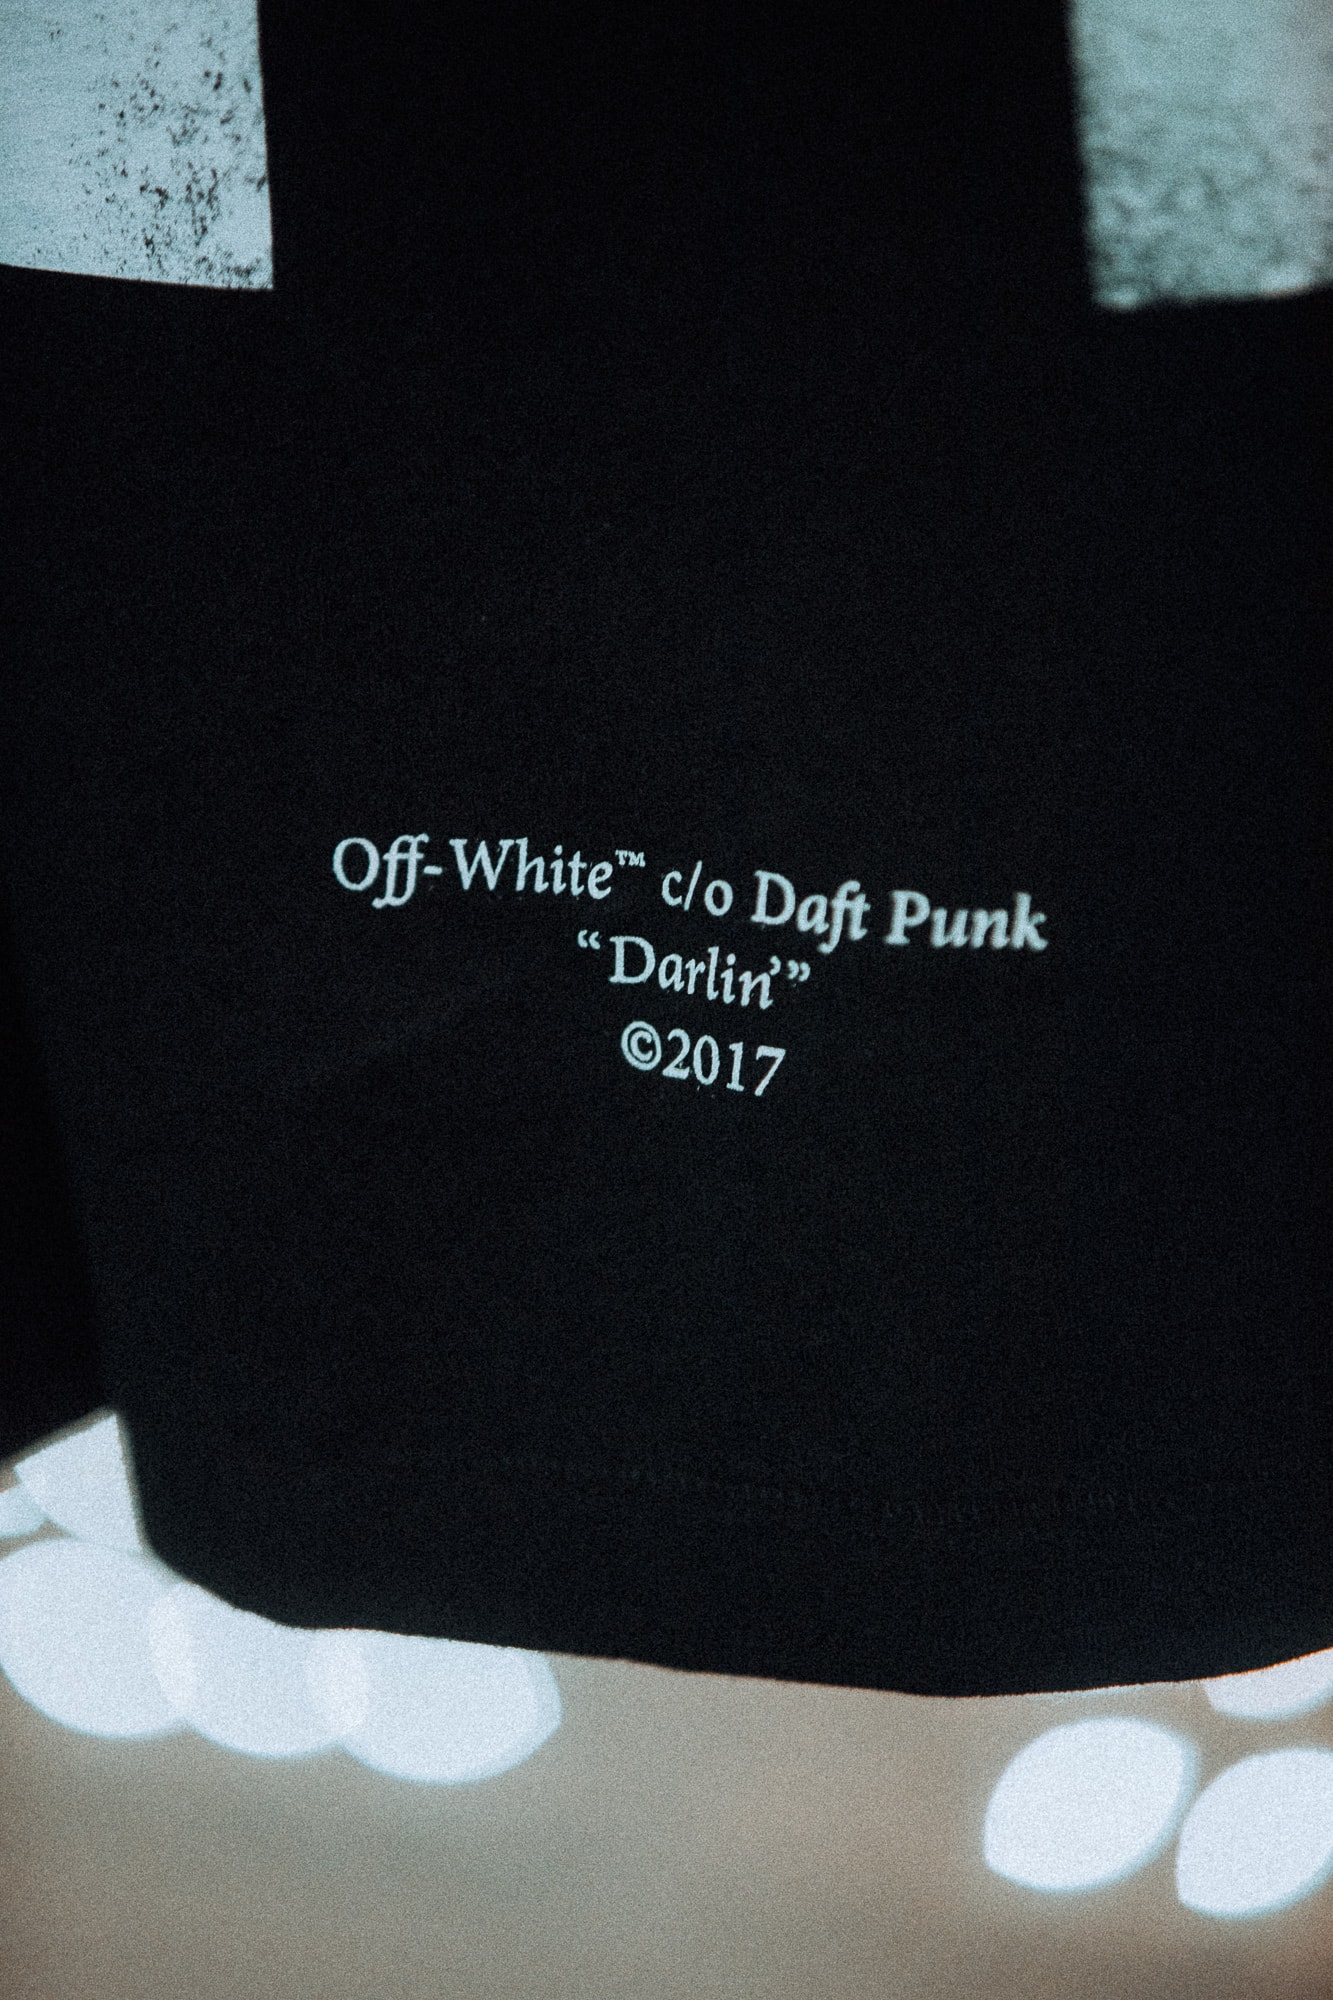 OFF-WHITE Daft Punk Darlin' Merch Maxfield Pop-Up